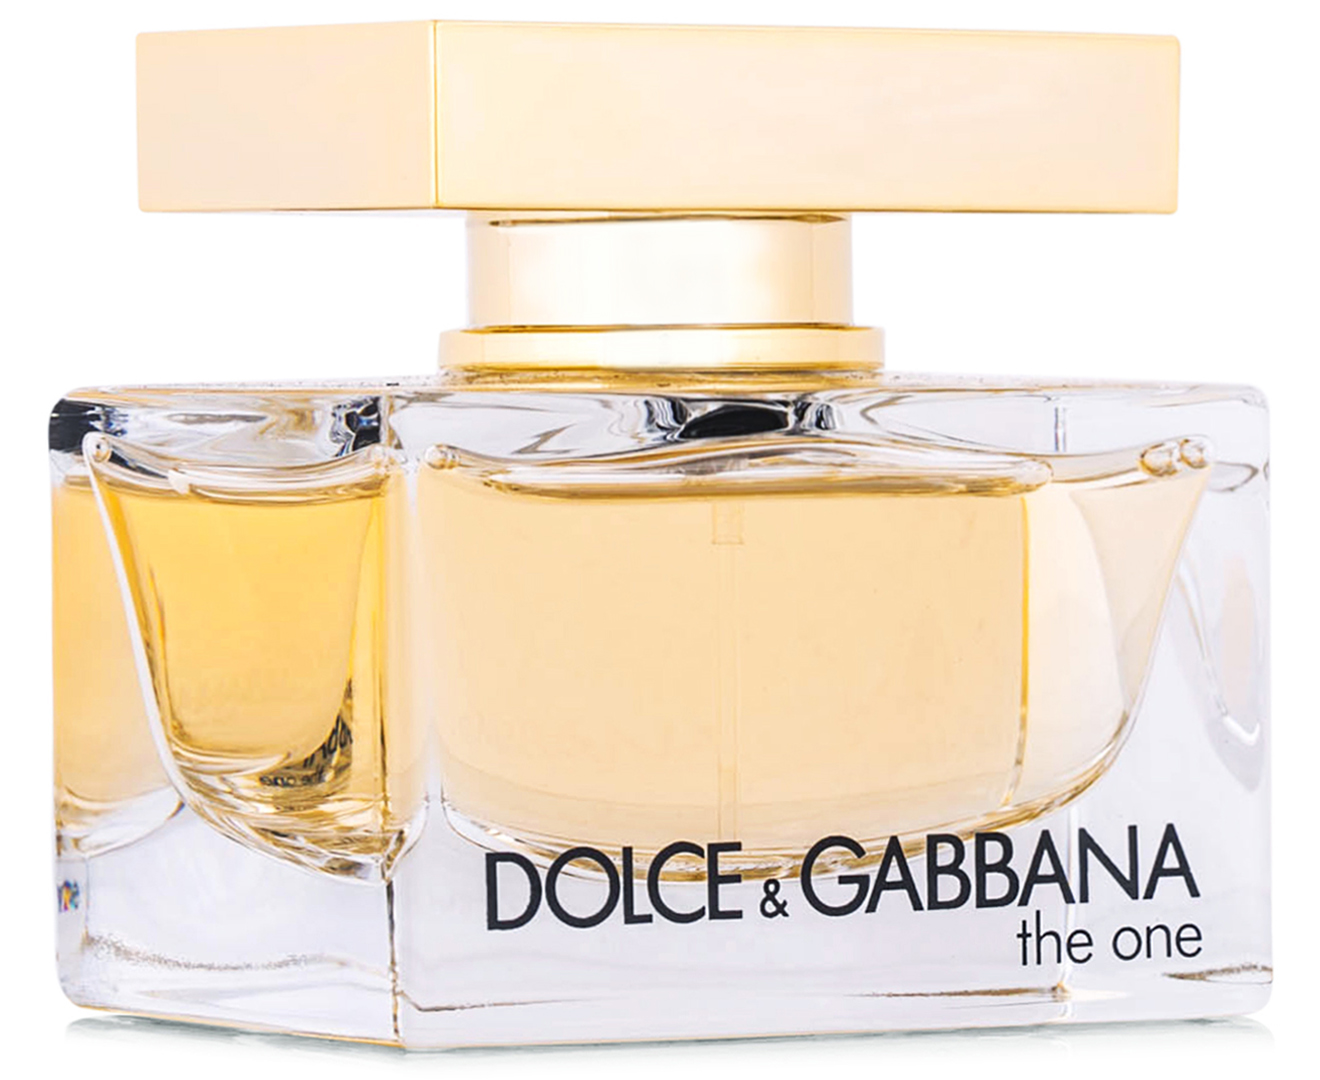 Dolce gabbana the one for woman. Dolce & Gabbana the one women EDP, 75 ml. Dolce & Gabbana the one for women EDP 50 ml. Dolce Gabbana the one женские 75 мл. Dolce Gabbana the one женские 50 ml.